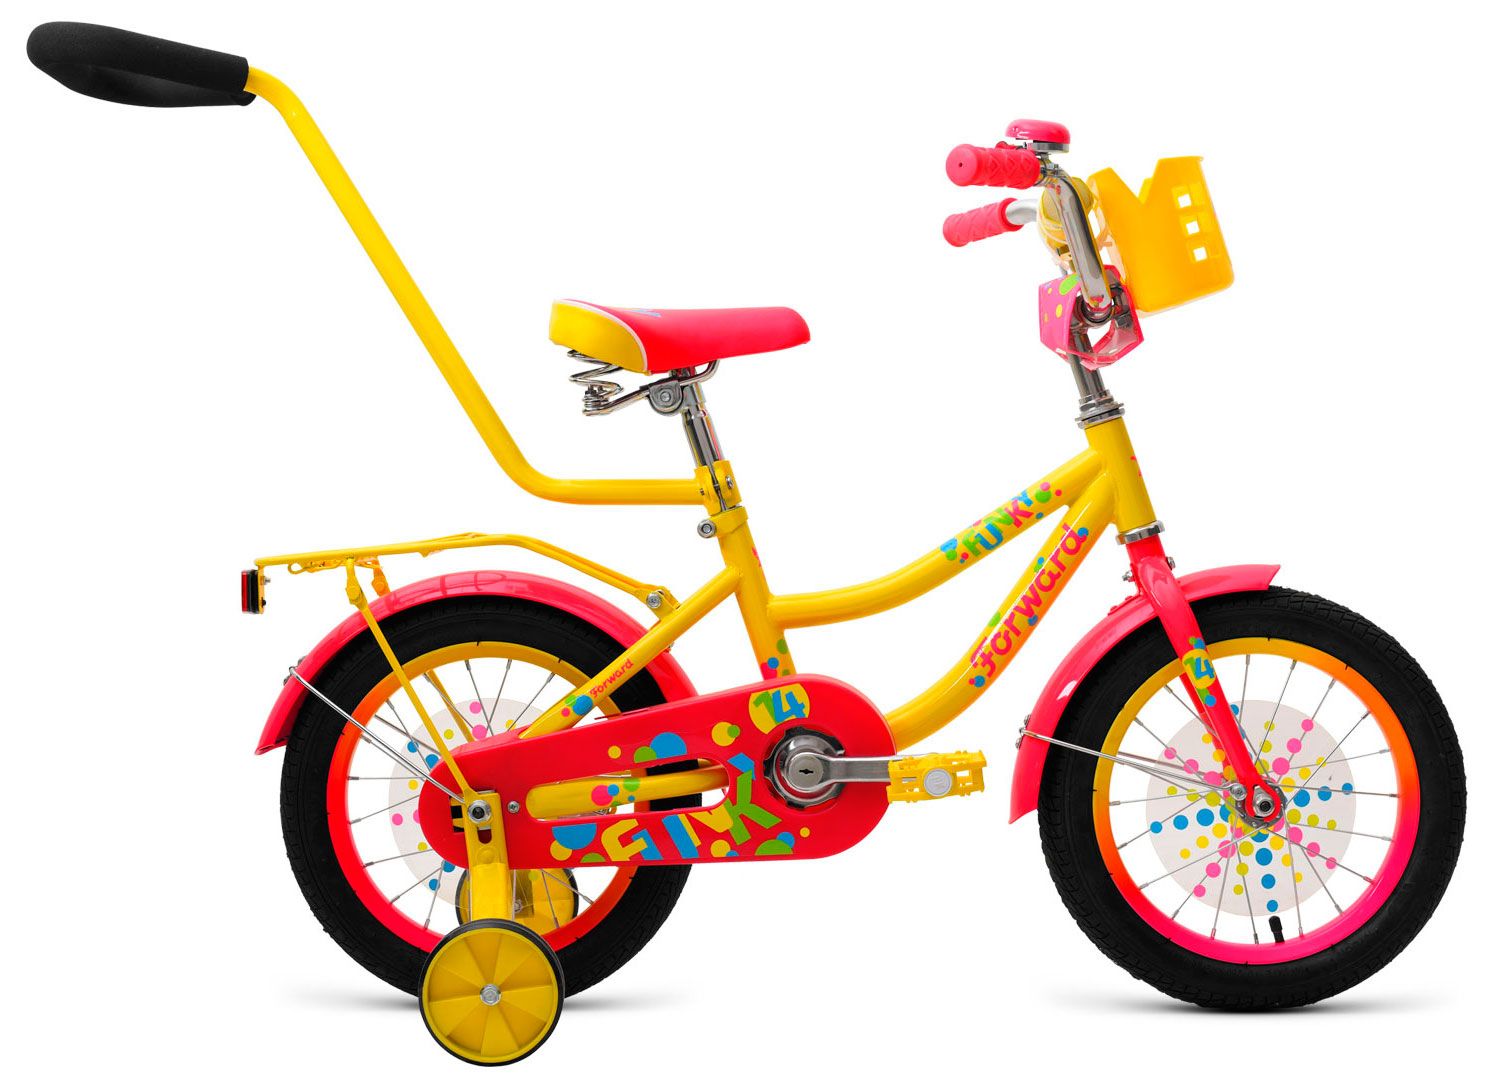  Отзывы о Трехколесный детский велосипед Forward Funky 14 2018